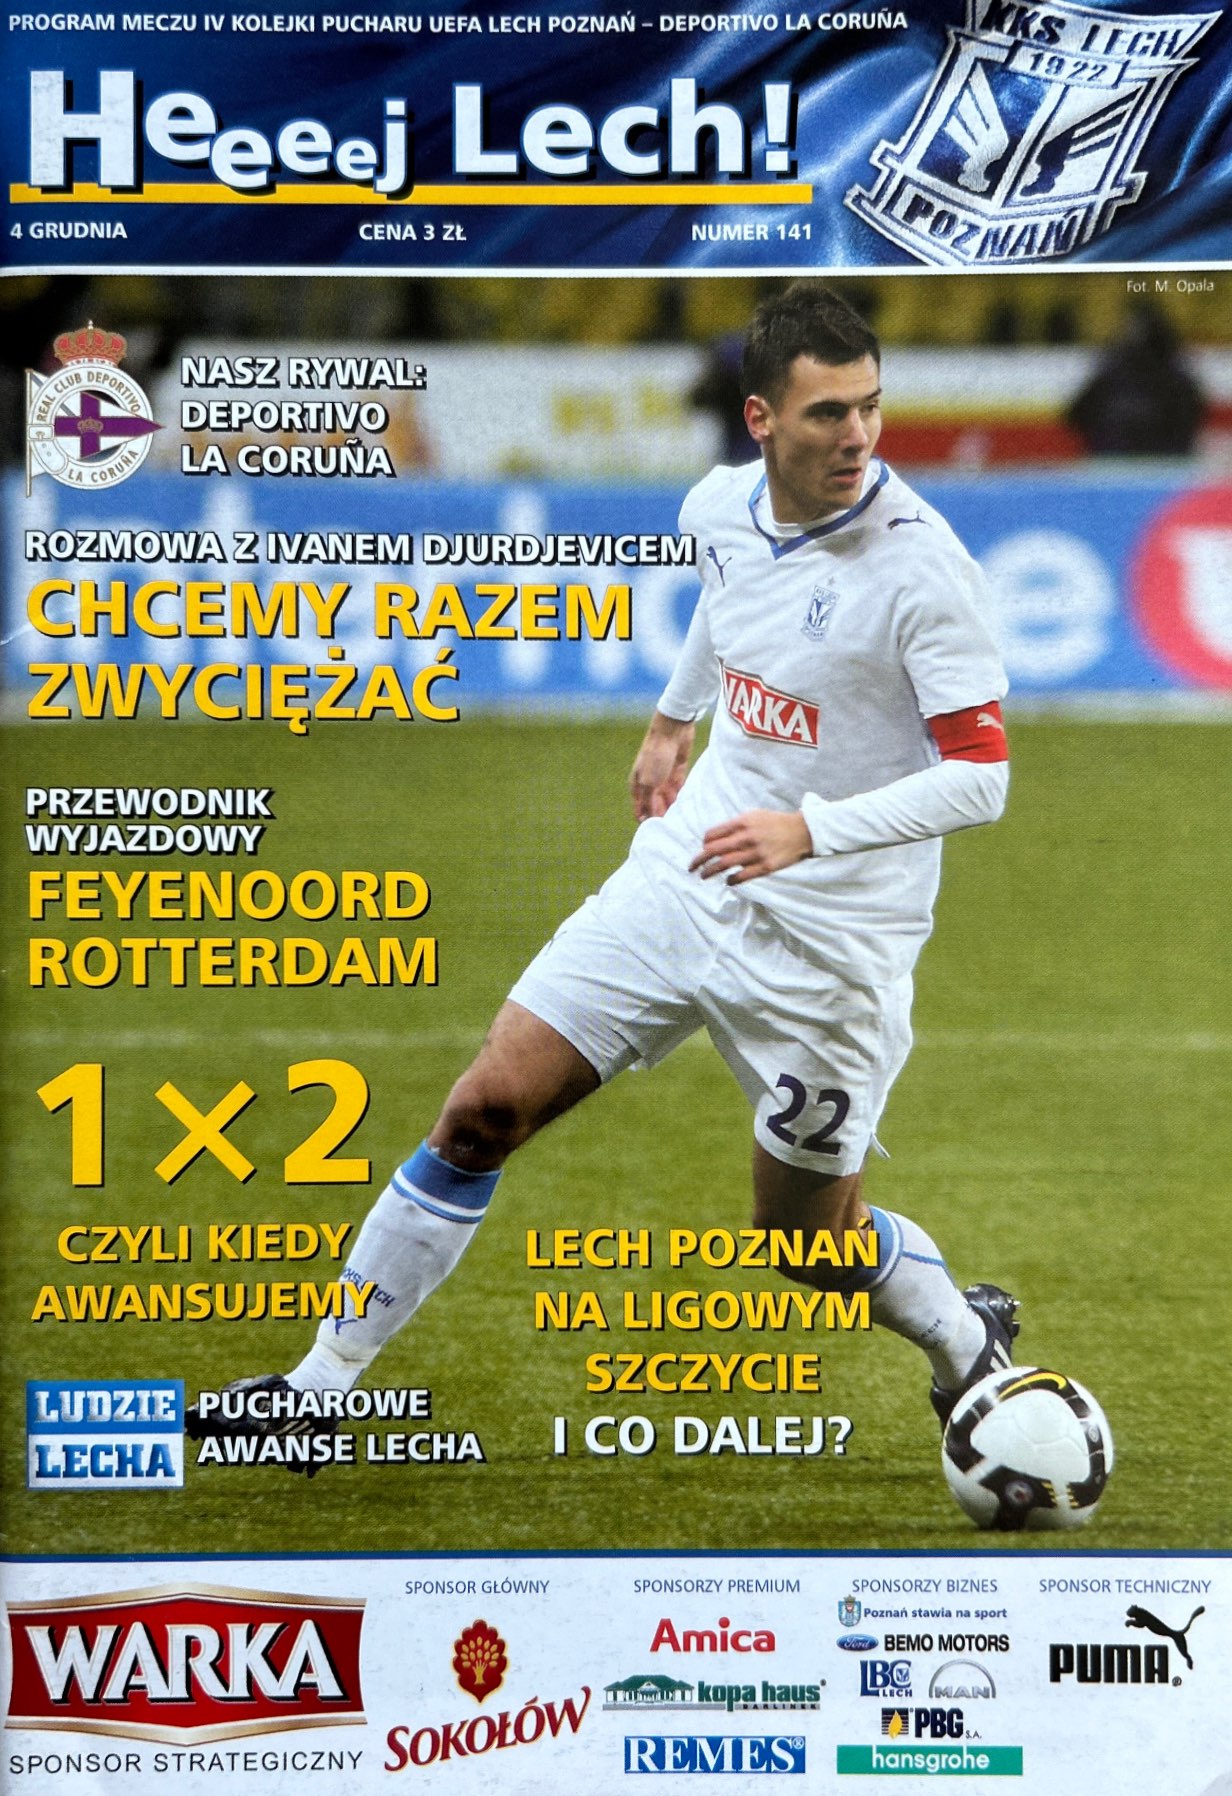 Program meczowy Lech Poznań - Deportivo La Coruña 1:1 (04.12.2008)